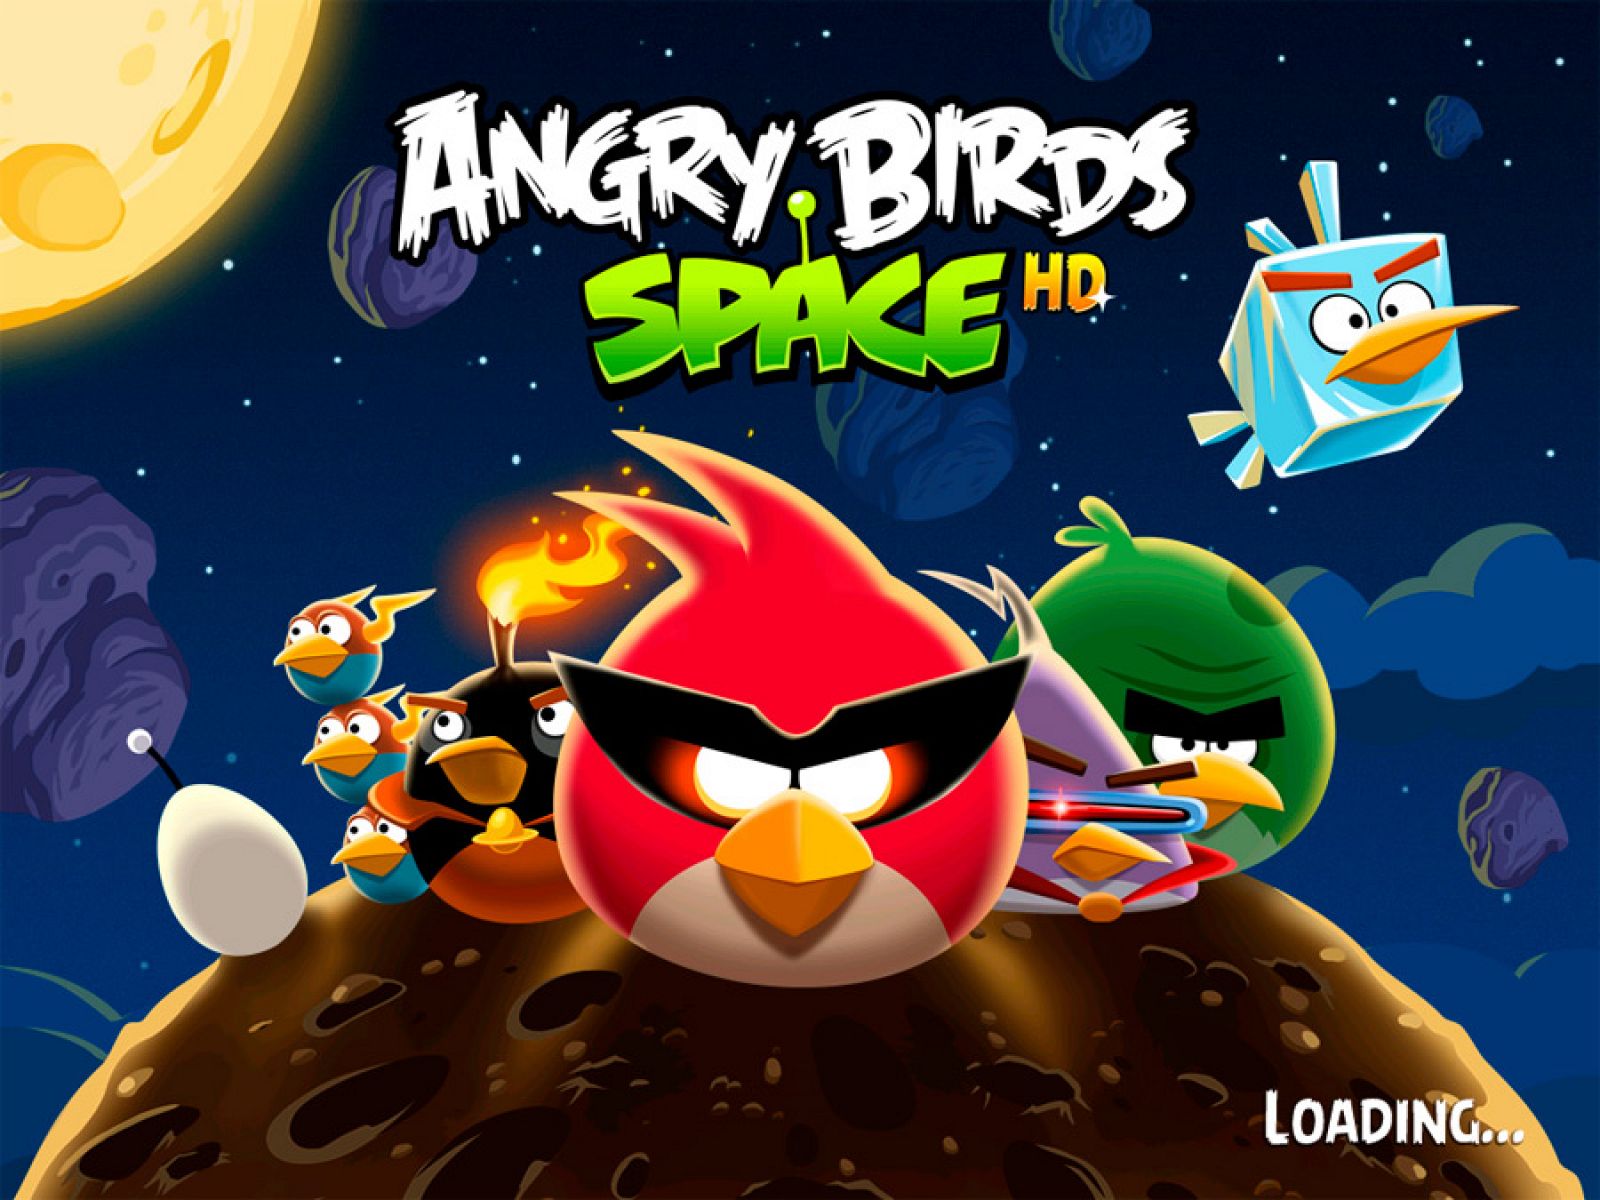 Imagen promocional del nuevo título de 'Angry Birds'